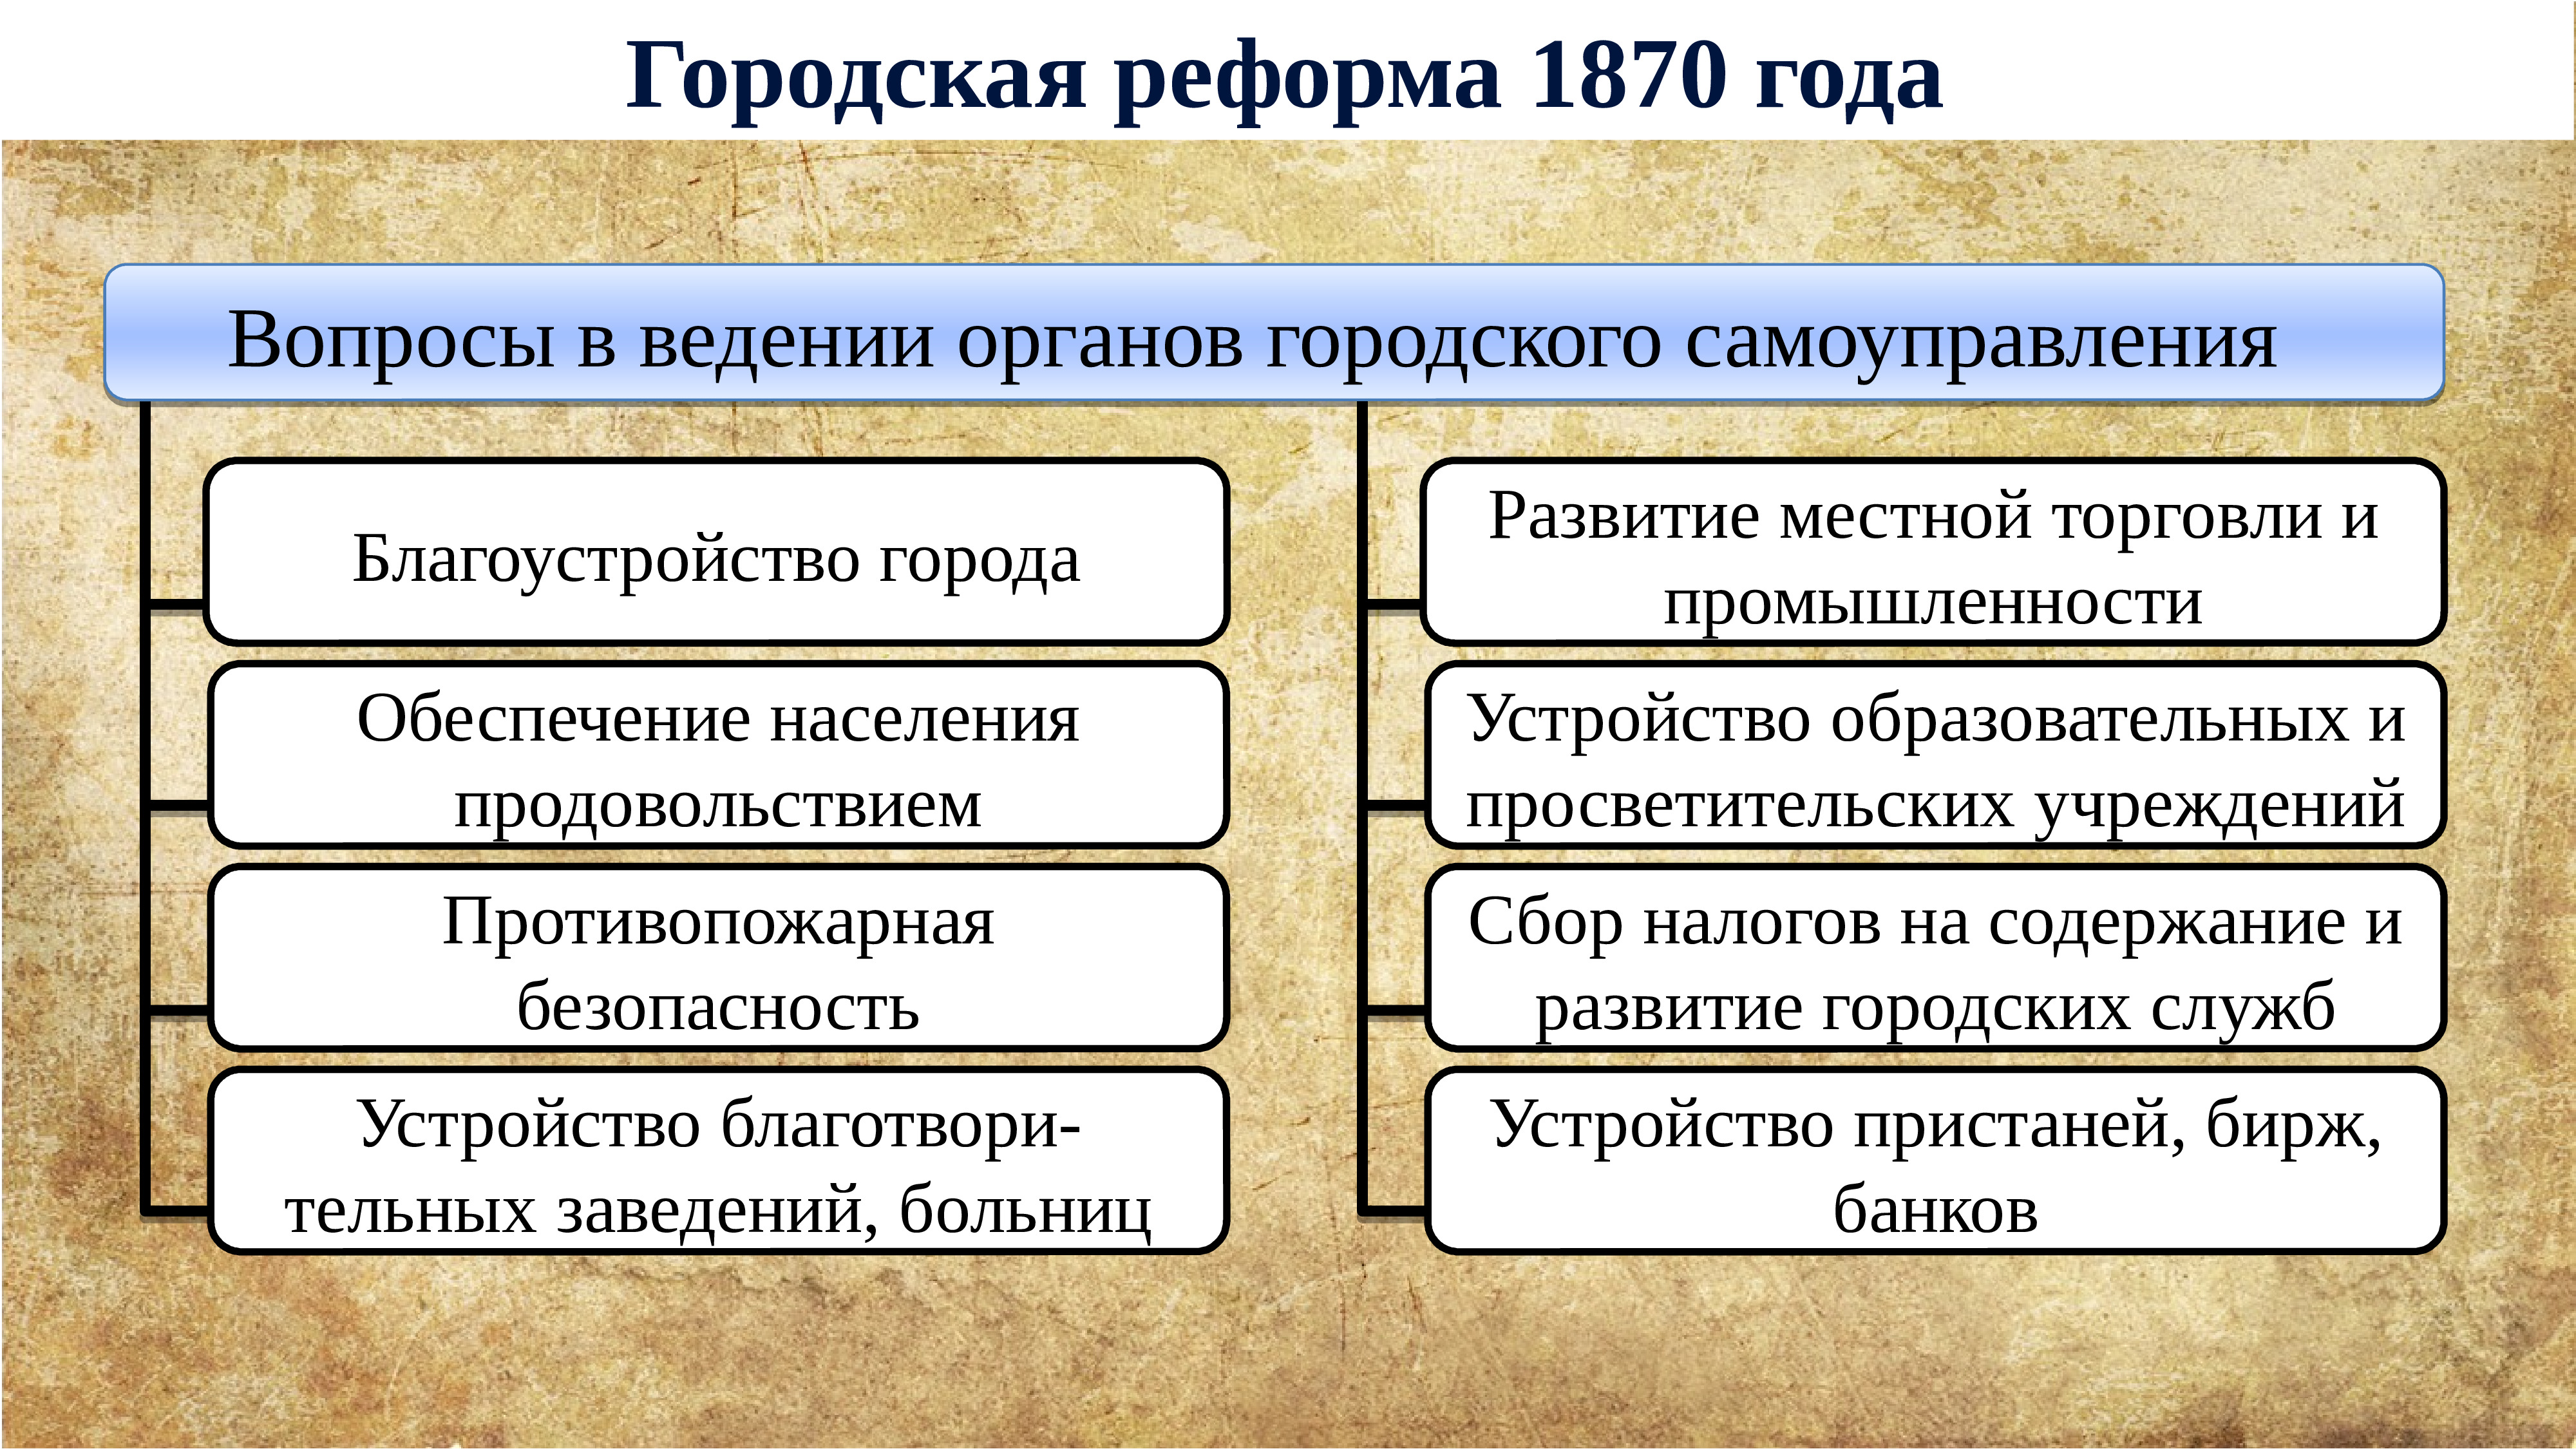 Основные изменения в дворянстве. Губернская реформа 1860-1870. Внутренняя политика Екатерины 2.